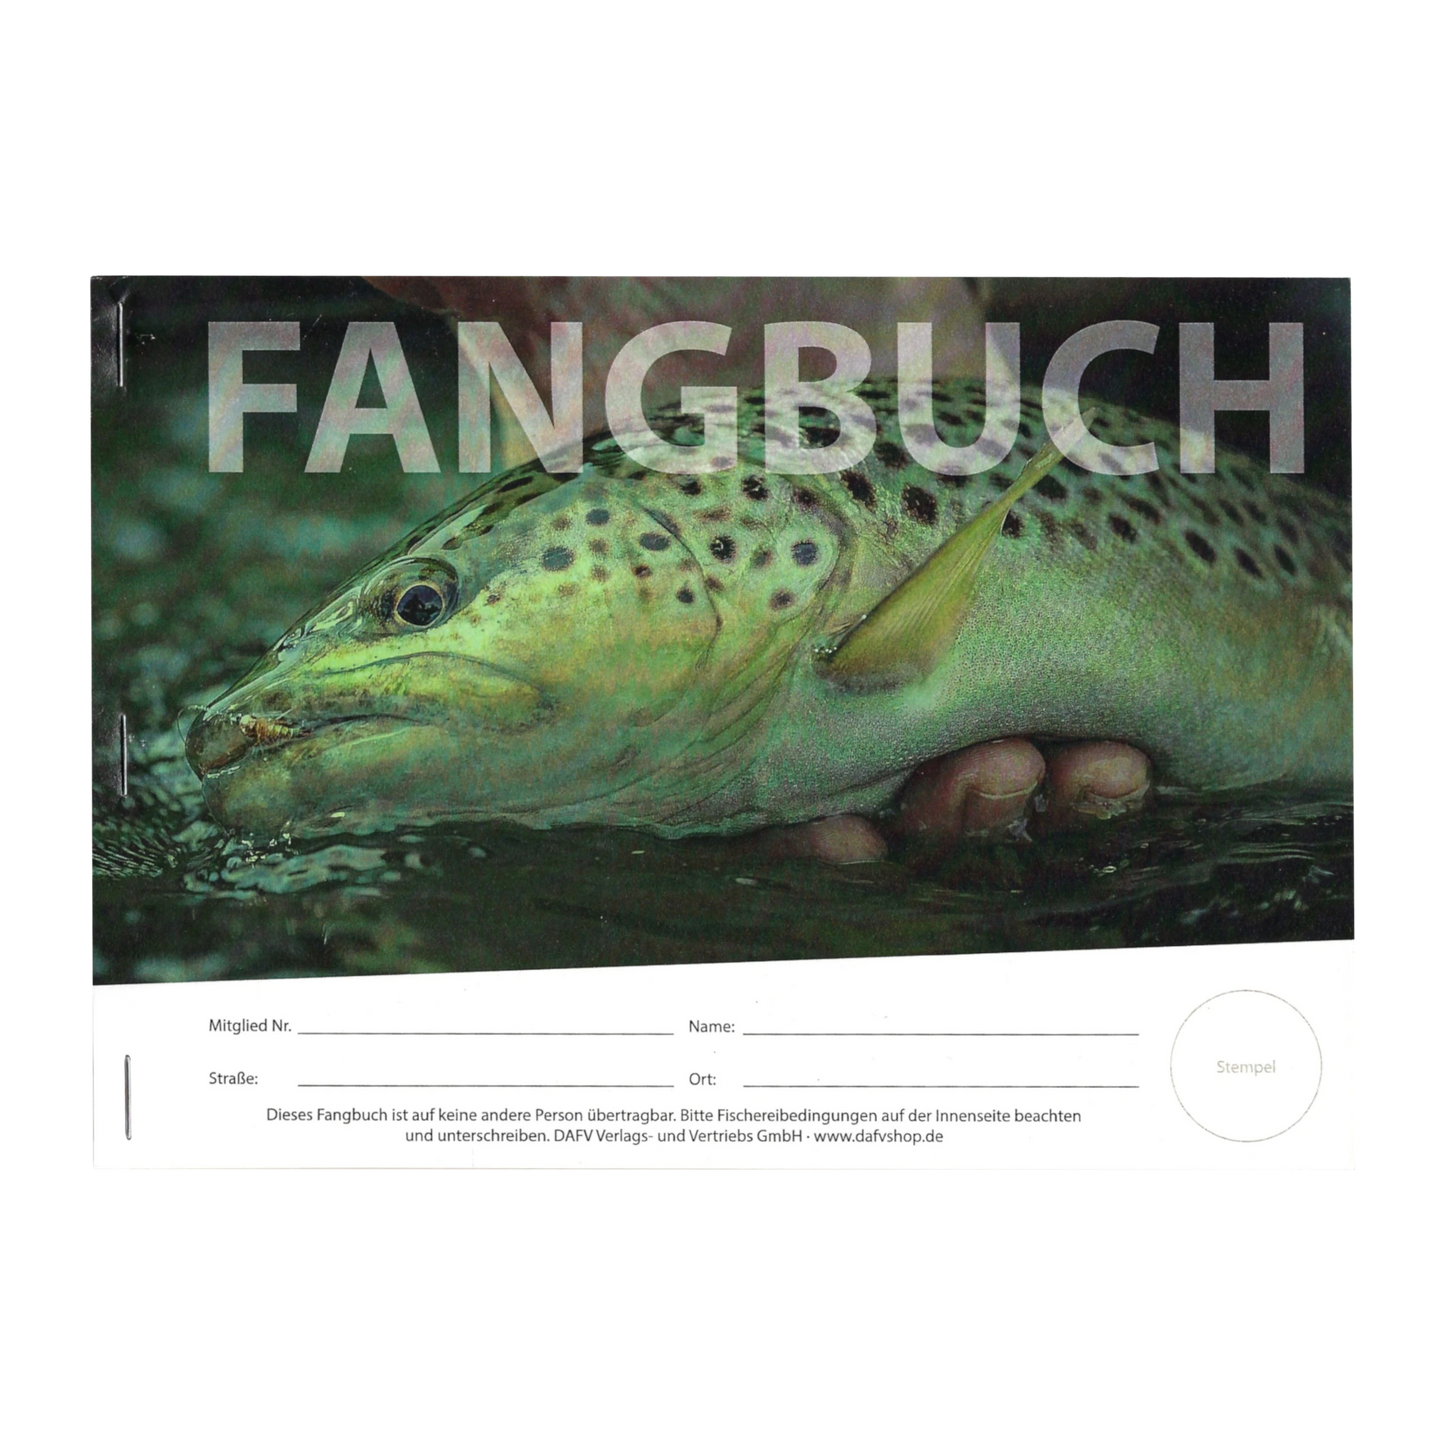 DAFV Fangbuch (Nachweis mit Durchschlagformular)